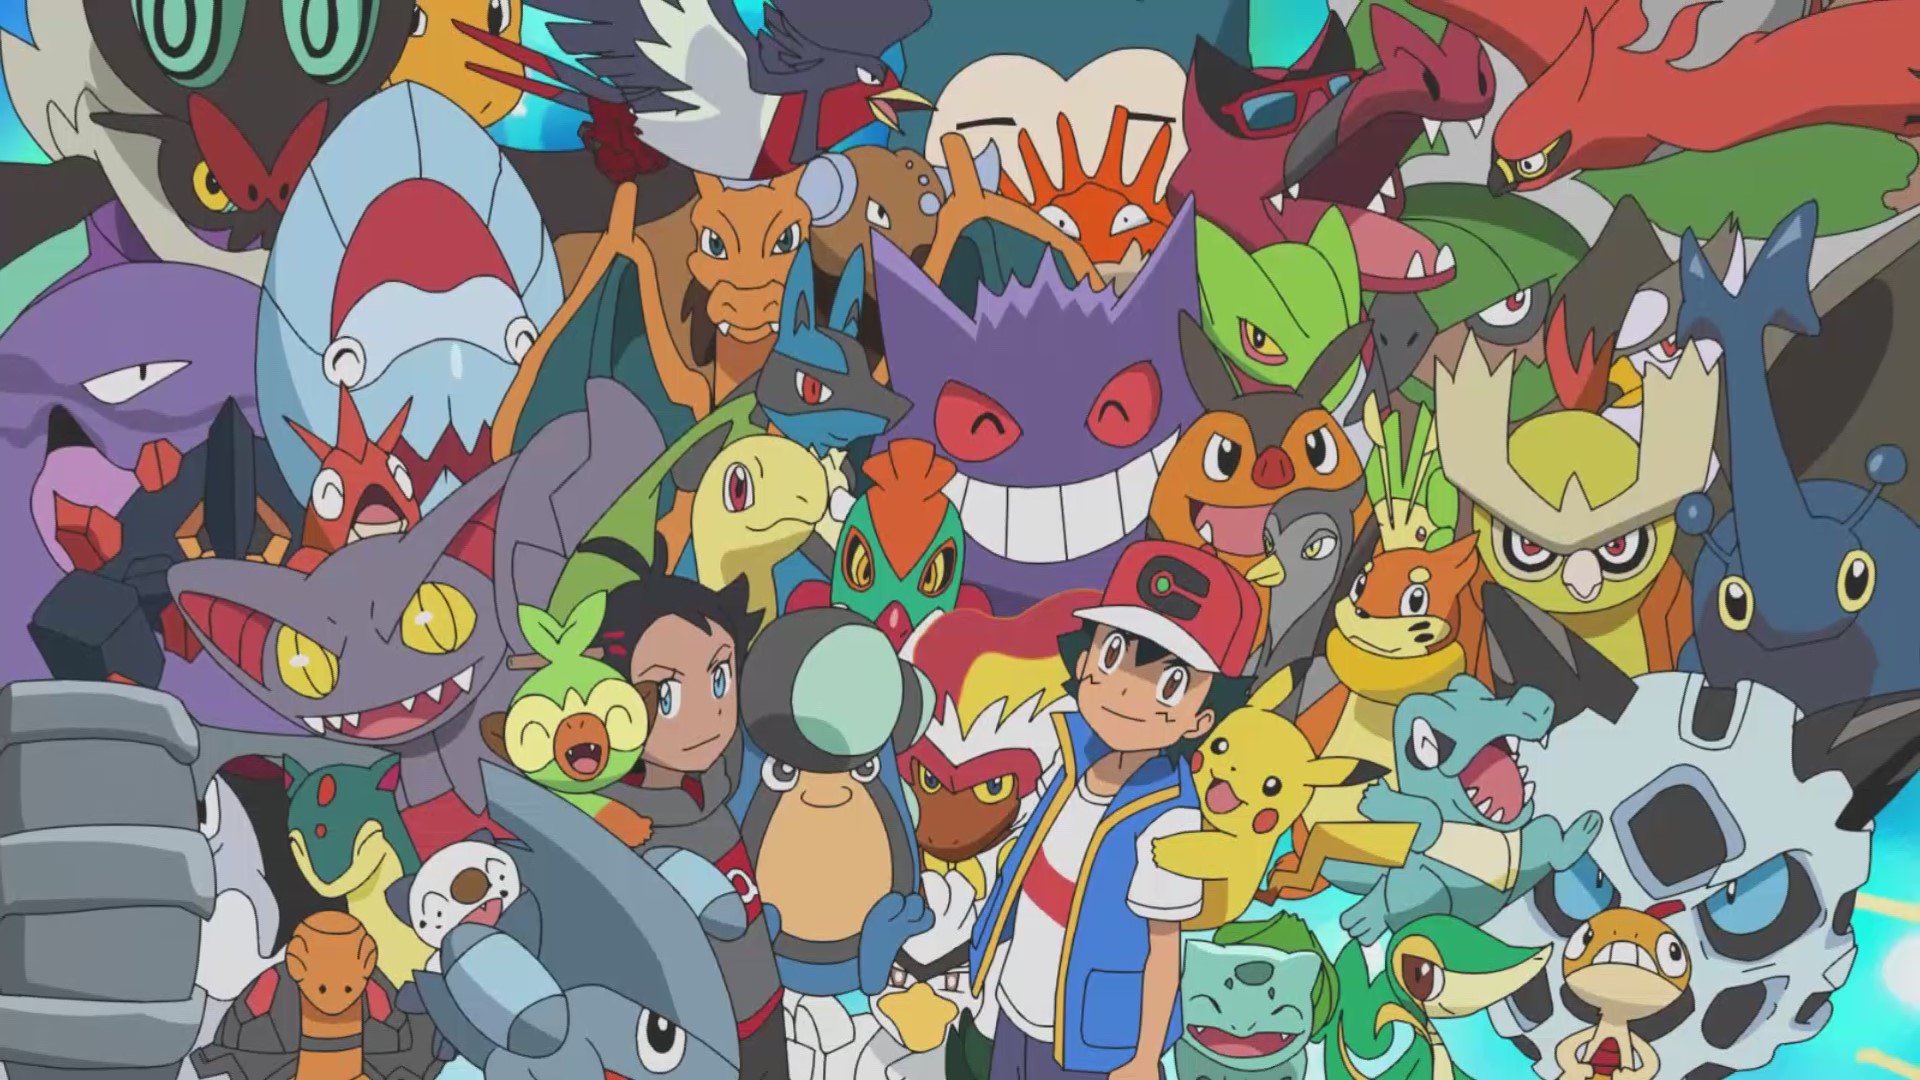 Ash Ketchum se torna campeão mundial em 'Pokémon